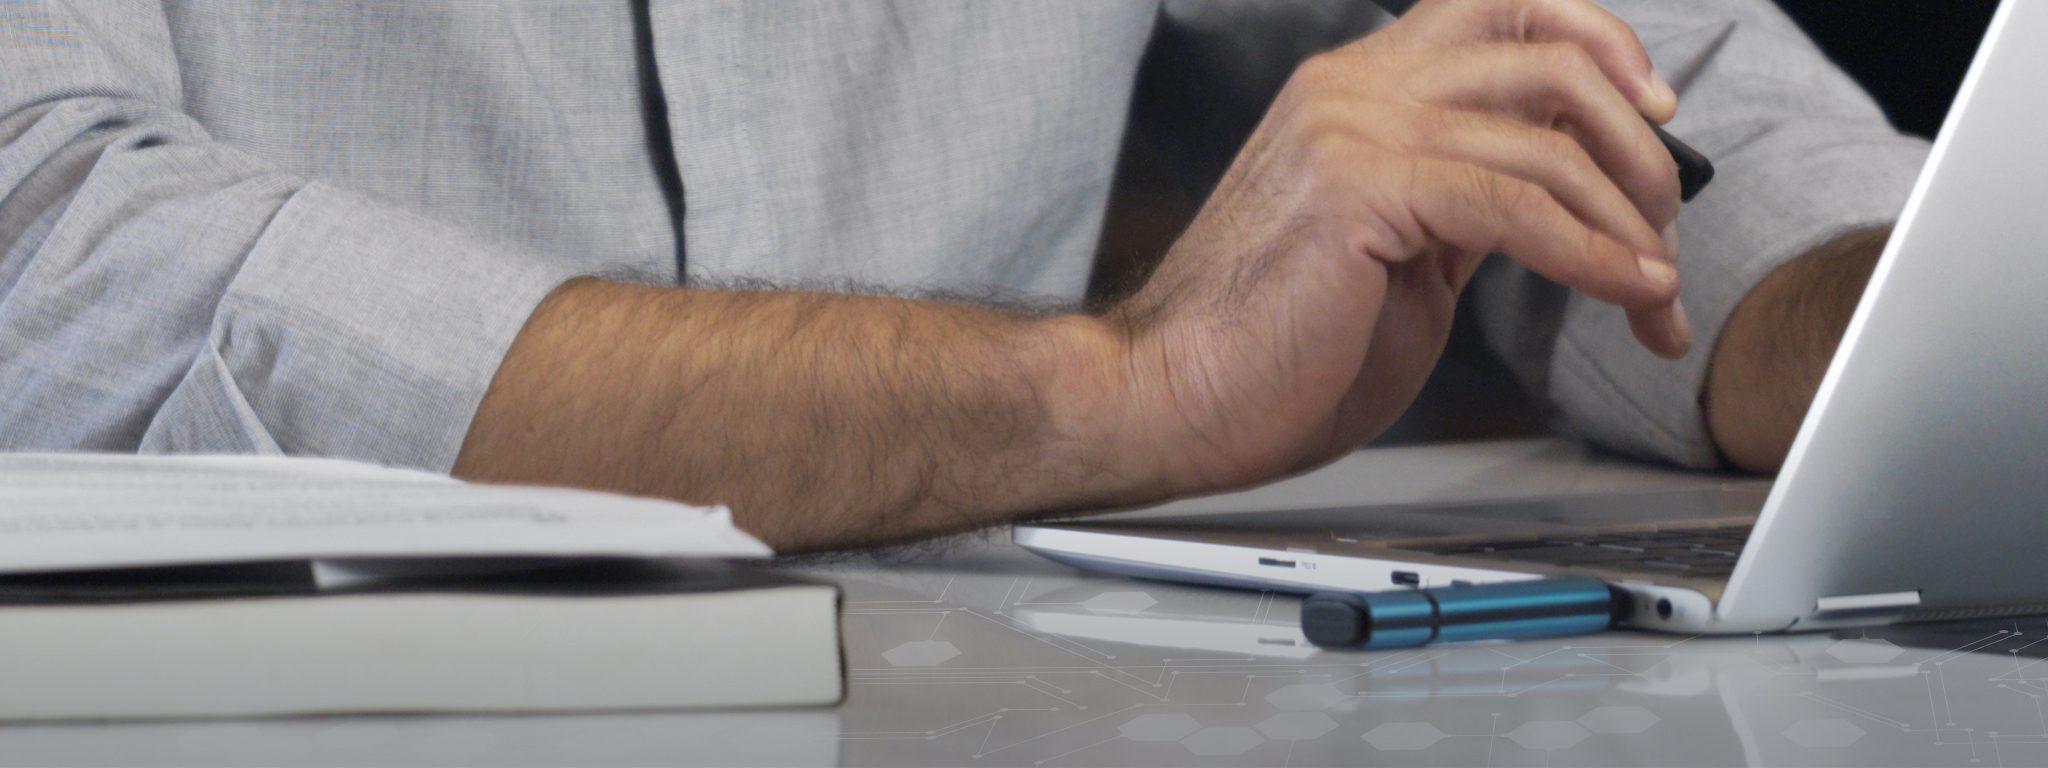 Immagine ravvicinata di un laptop con un drive USB Kingston IronKey collegato e la mano di un uomo che digita sulla tastiera